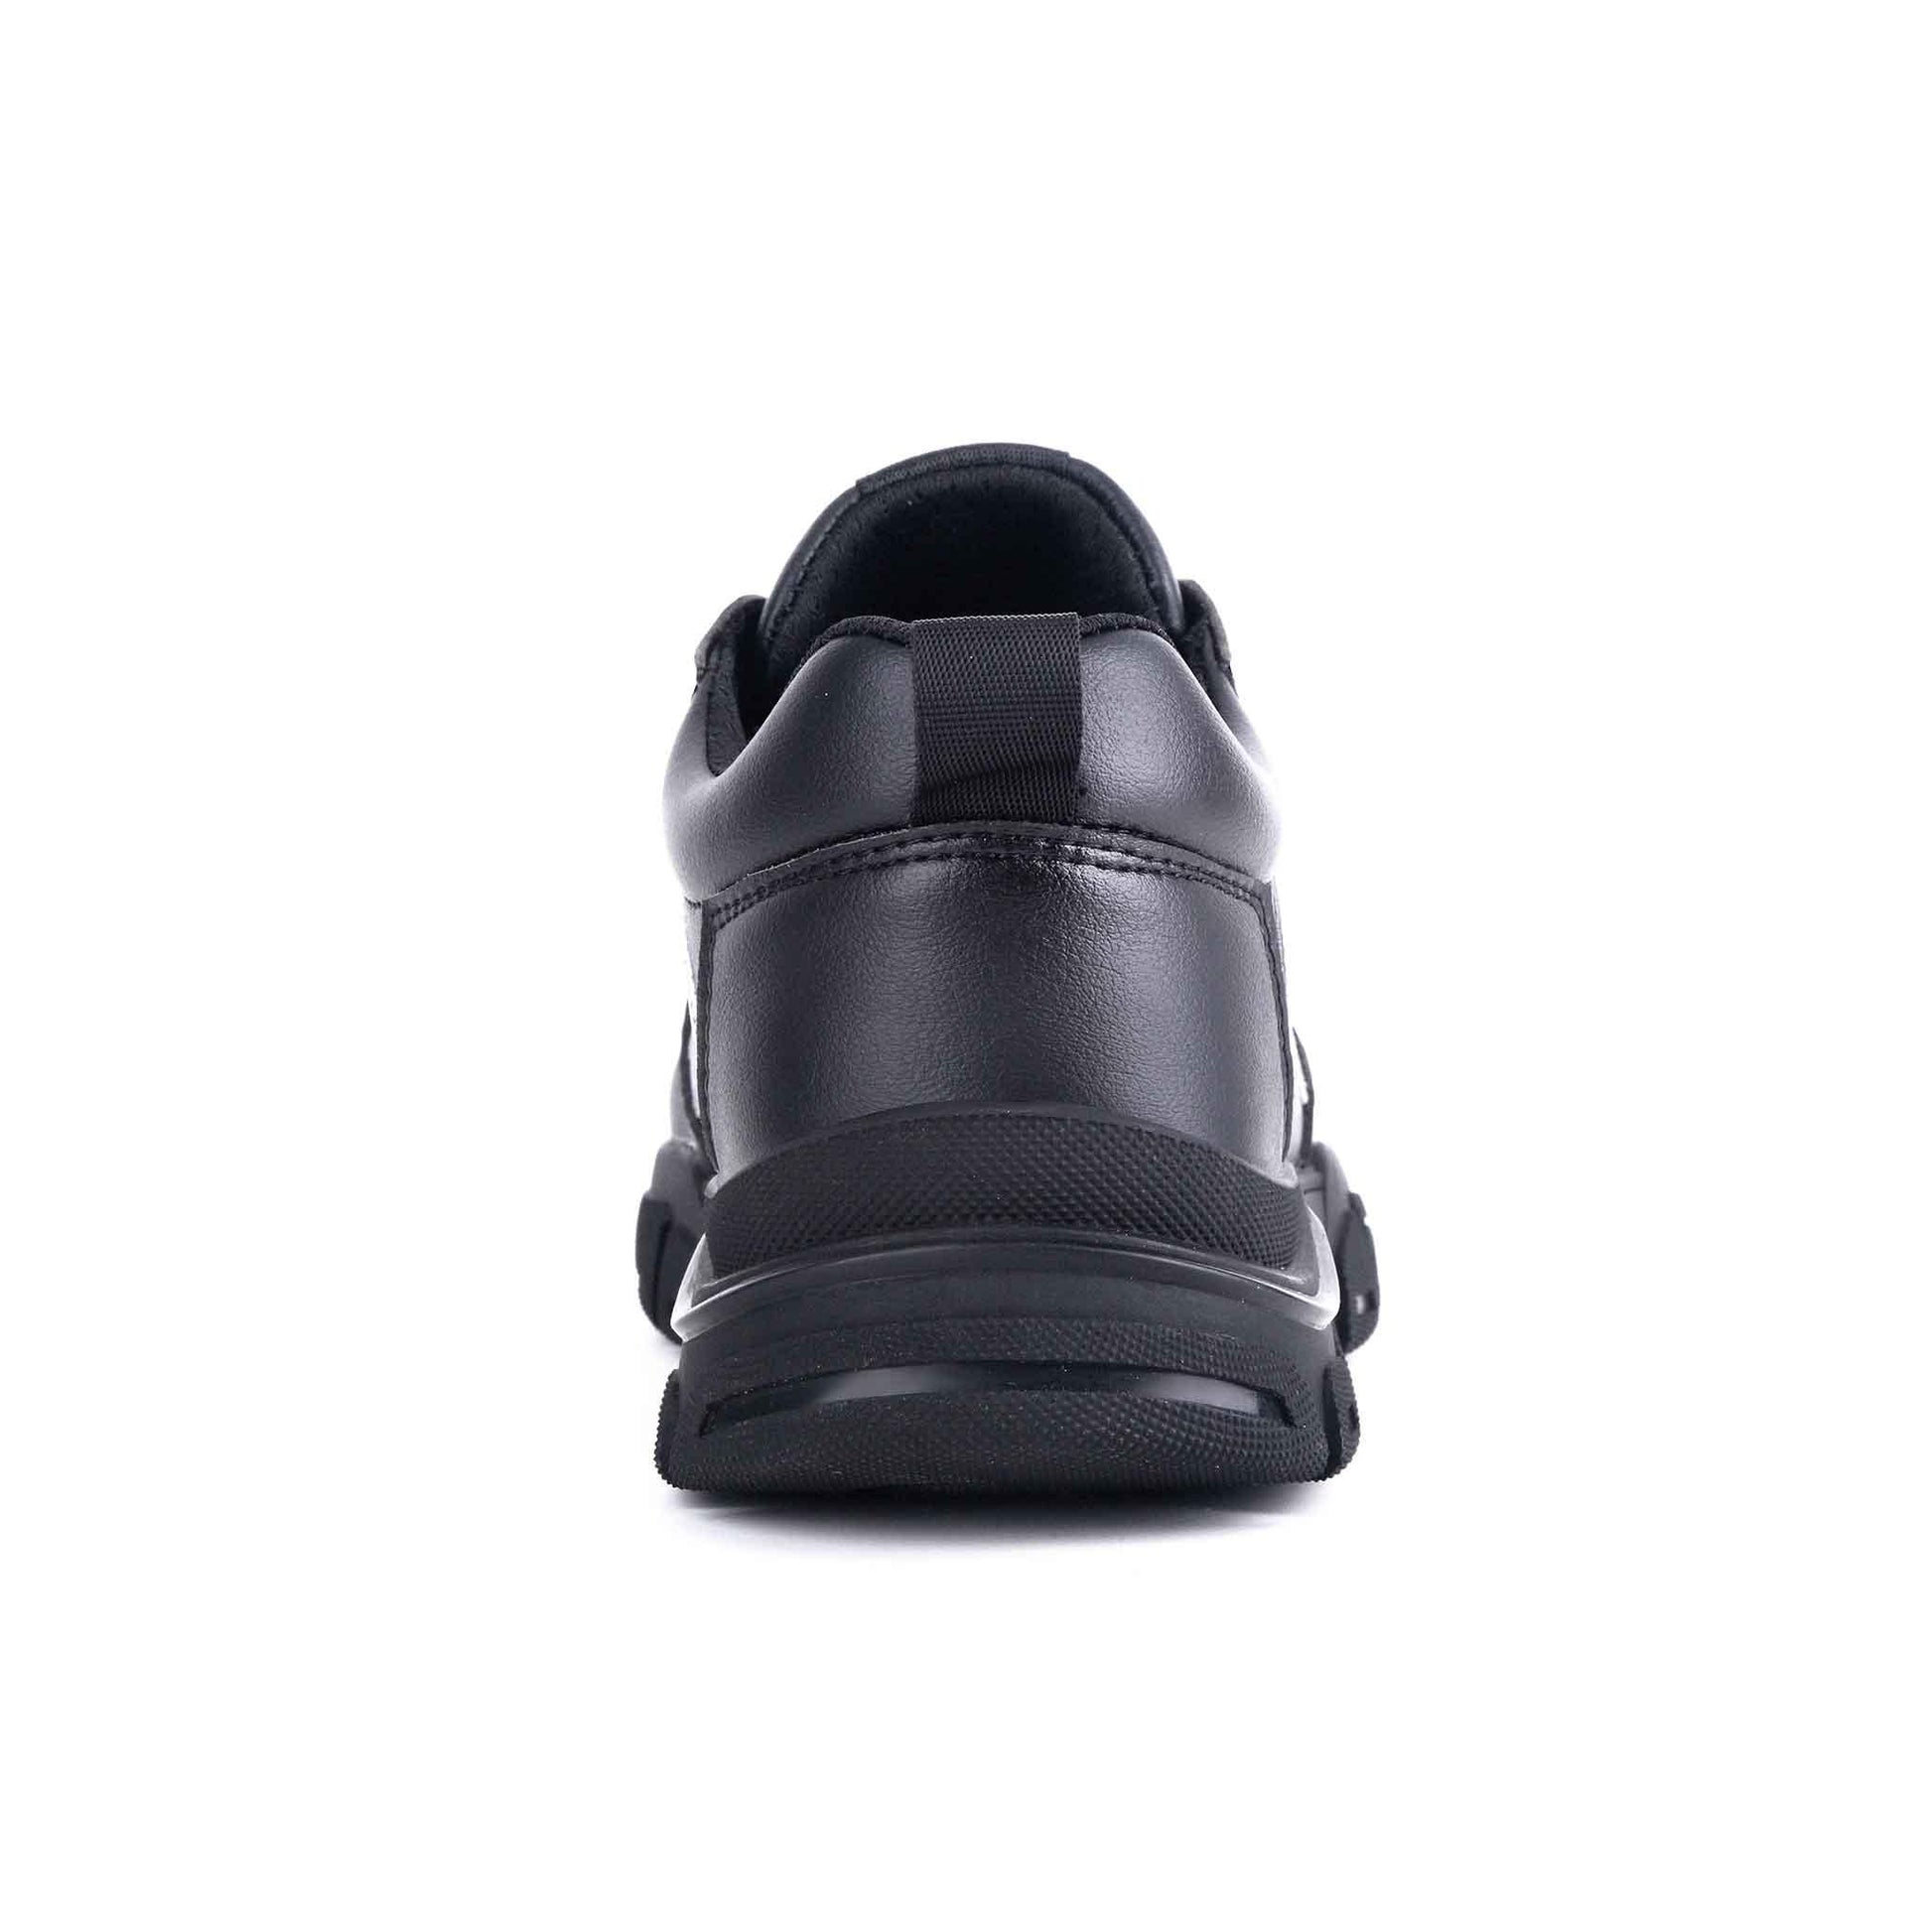 Women's Steel Toe Shoes - Waterproof | Z002 - USINE PRO Footwear